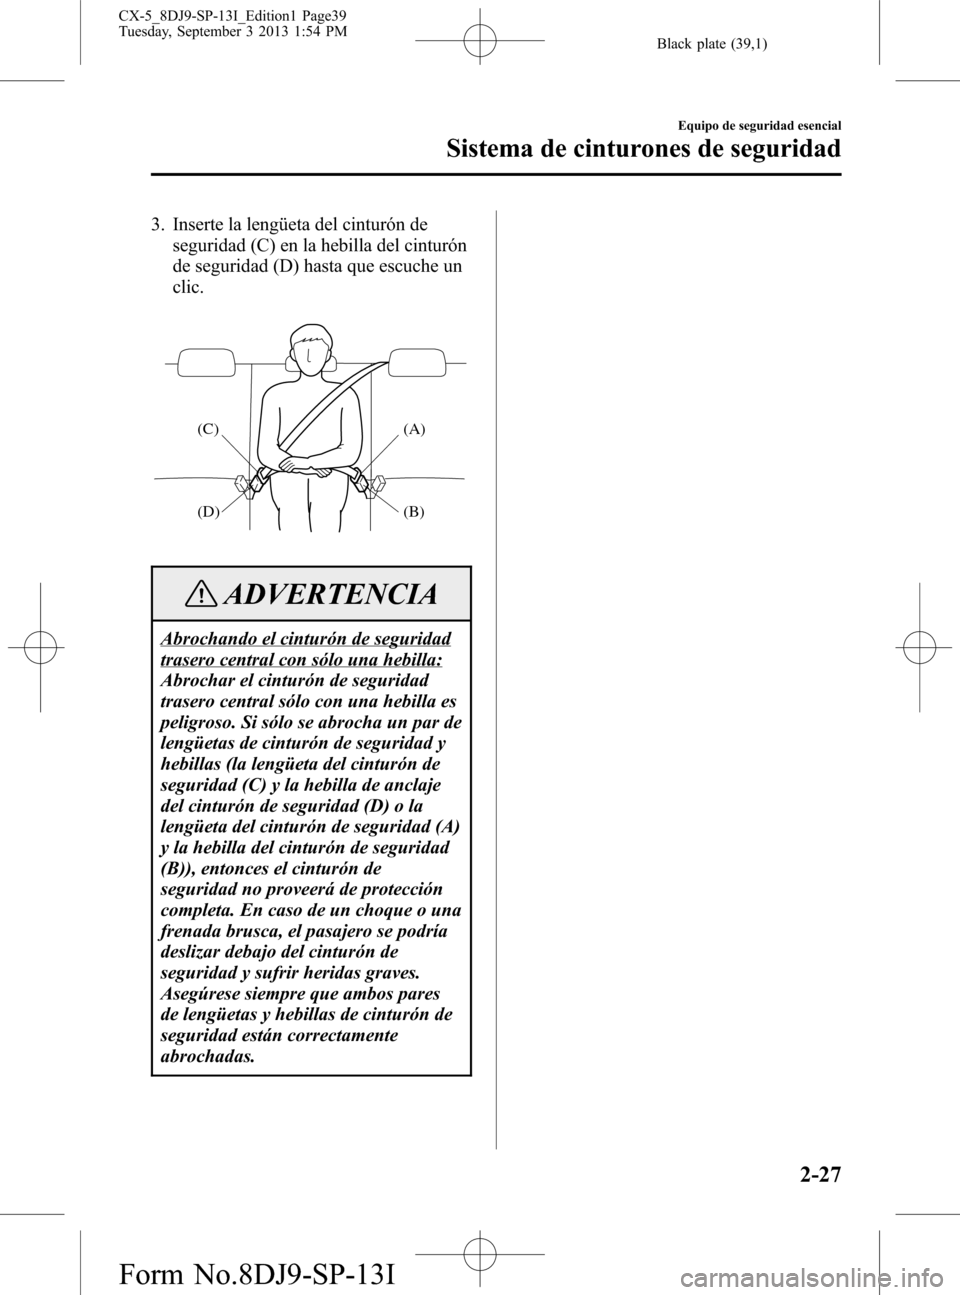 MAZDA MODEL CX-5 2014  Manual del propietario (in Spanish) Black plate (39,1)
3. Inserte la lengüeta del cinturón de
seguridad (C) en la hebilla del cinturón
de seguridad (D) hasta que escuche un
clic.
(A)
(B) (C)
(D)
ADVERTENCIA
Abrochando el cinturón de